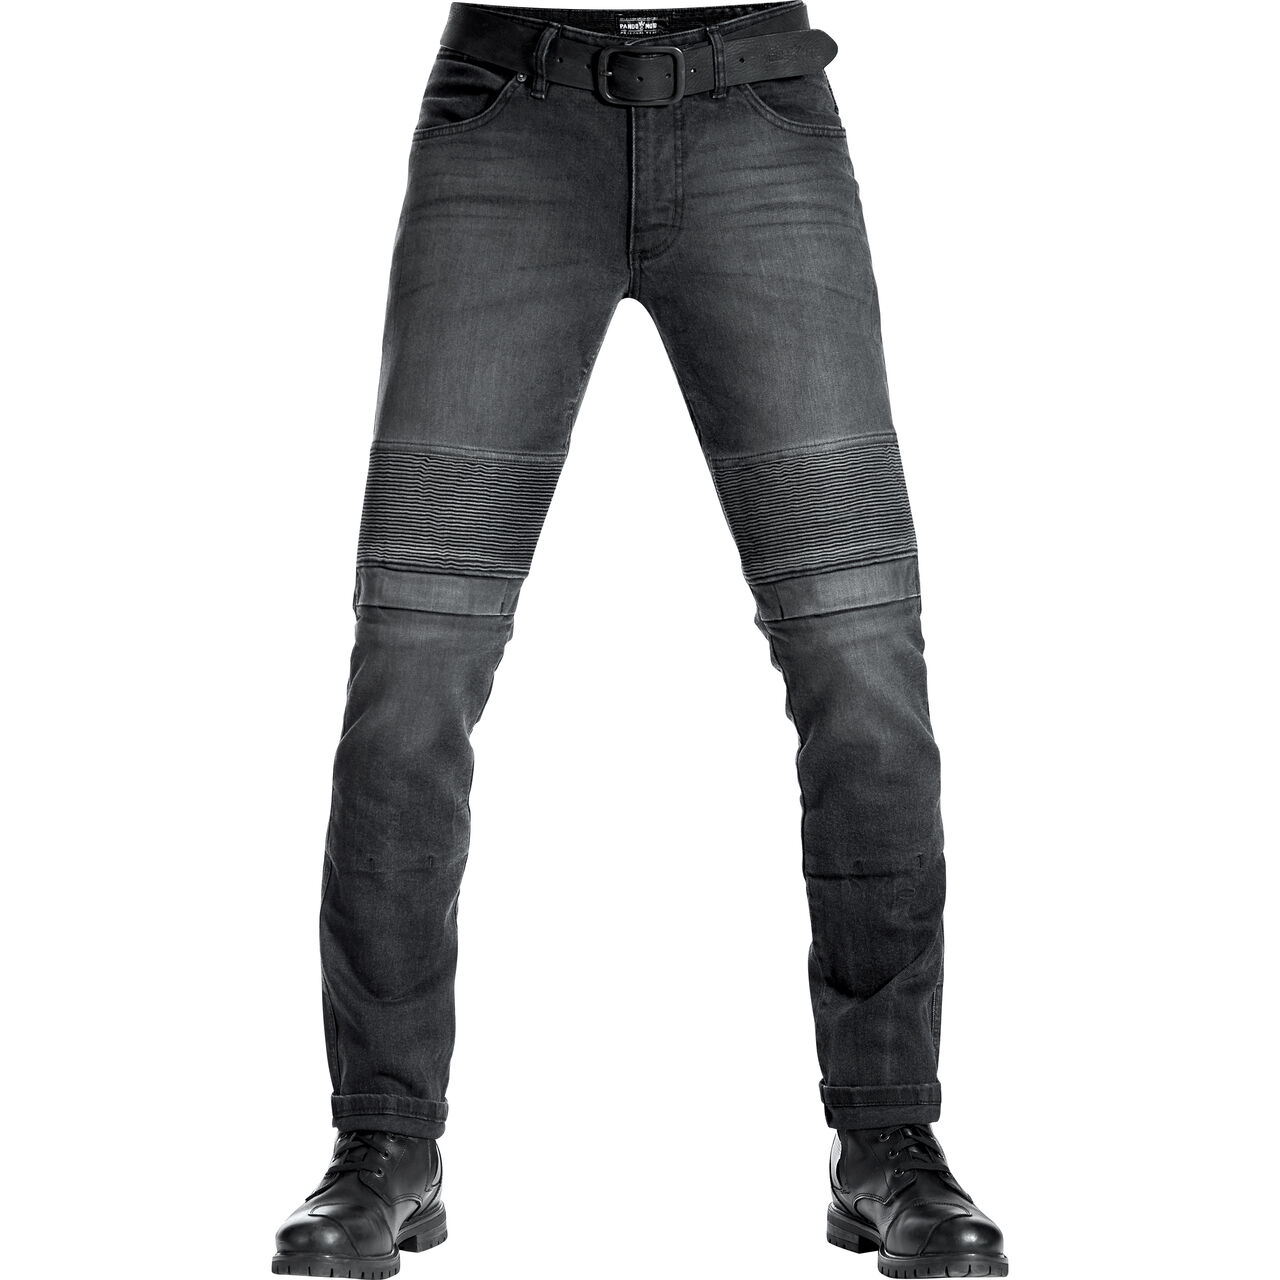 Karl Devil 9 Jeans black 32/32